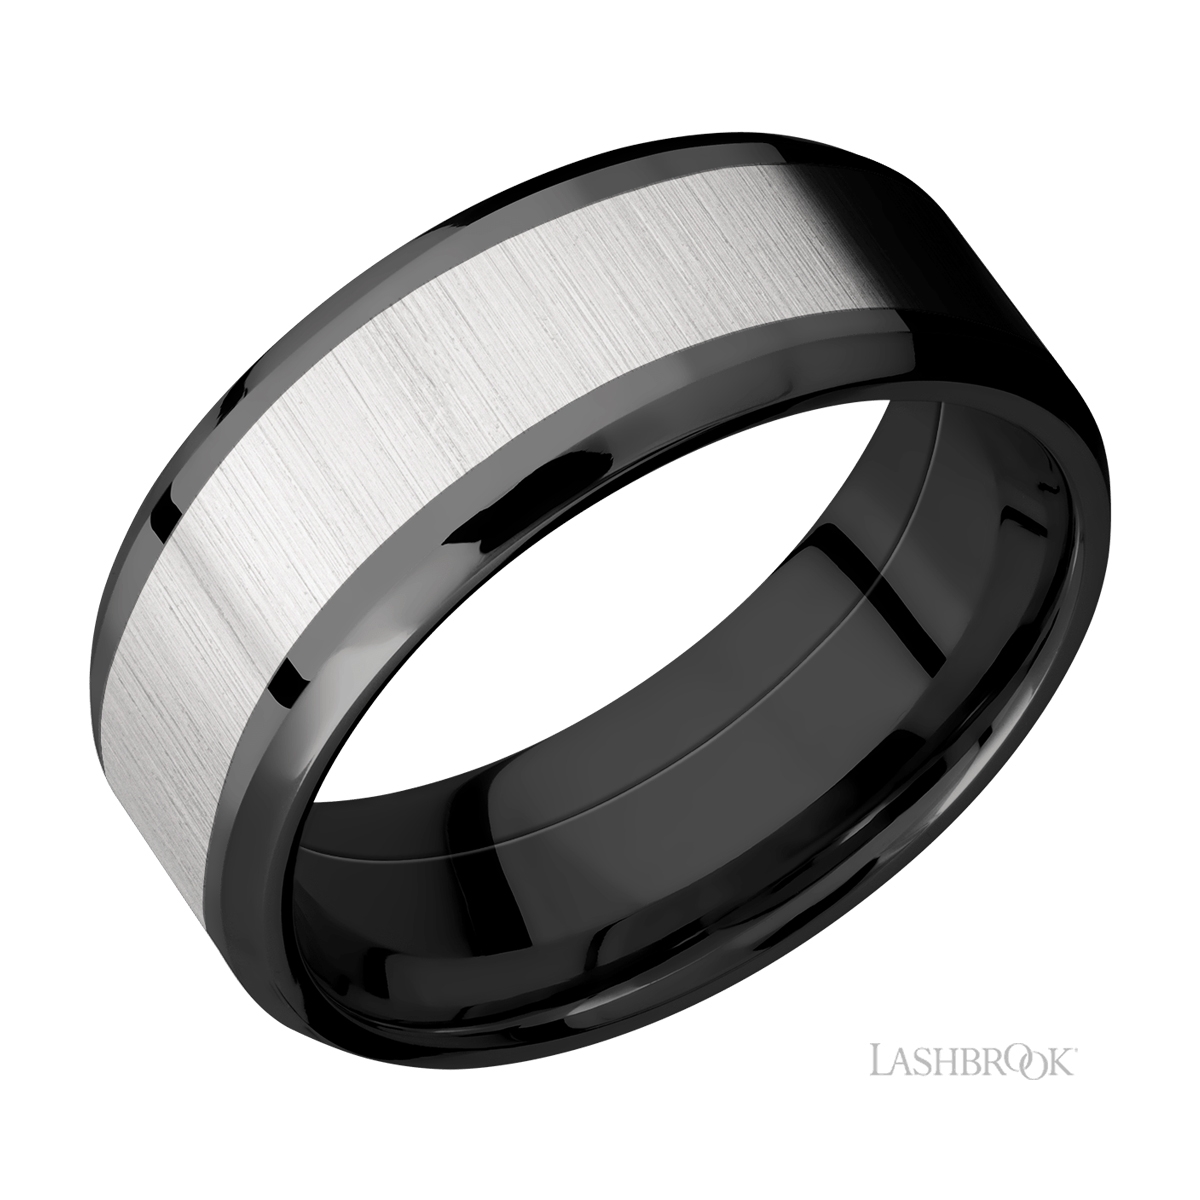 Lashbrook ZPF8B15(NS)/TITANIUM Zirconium Wedding Ring or Band